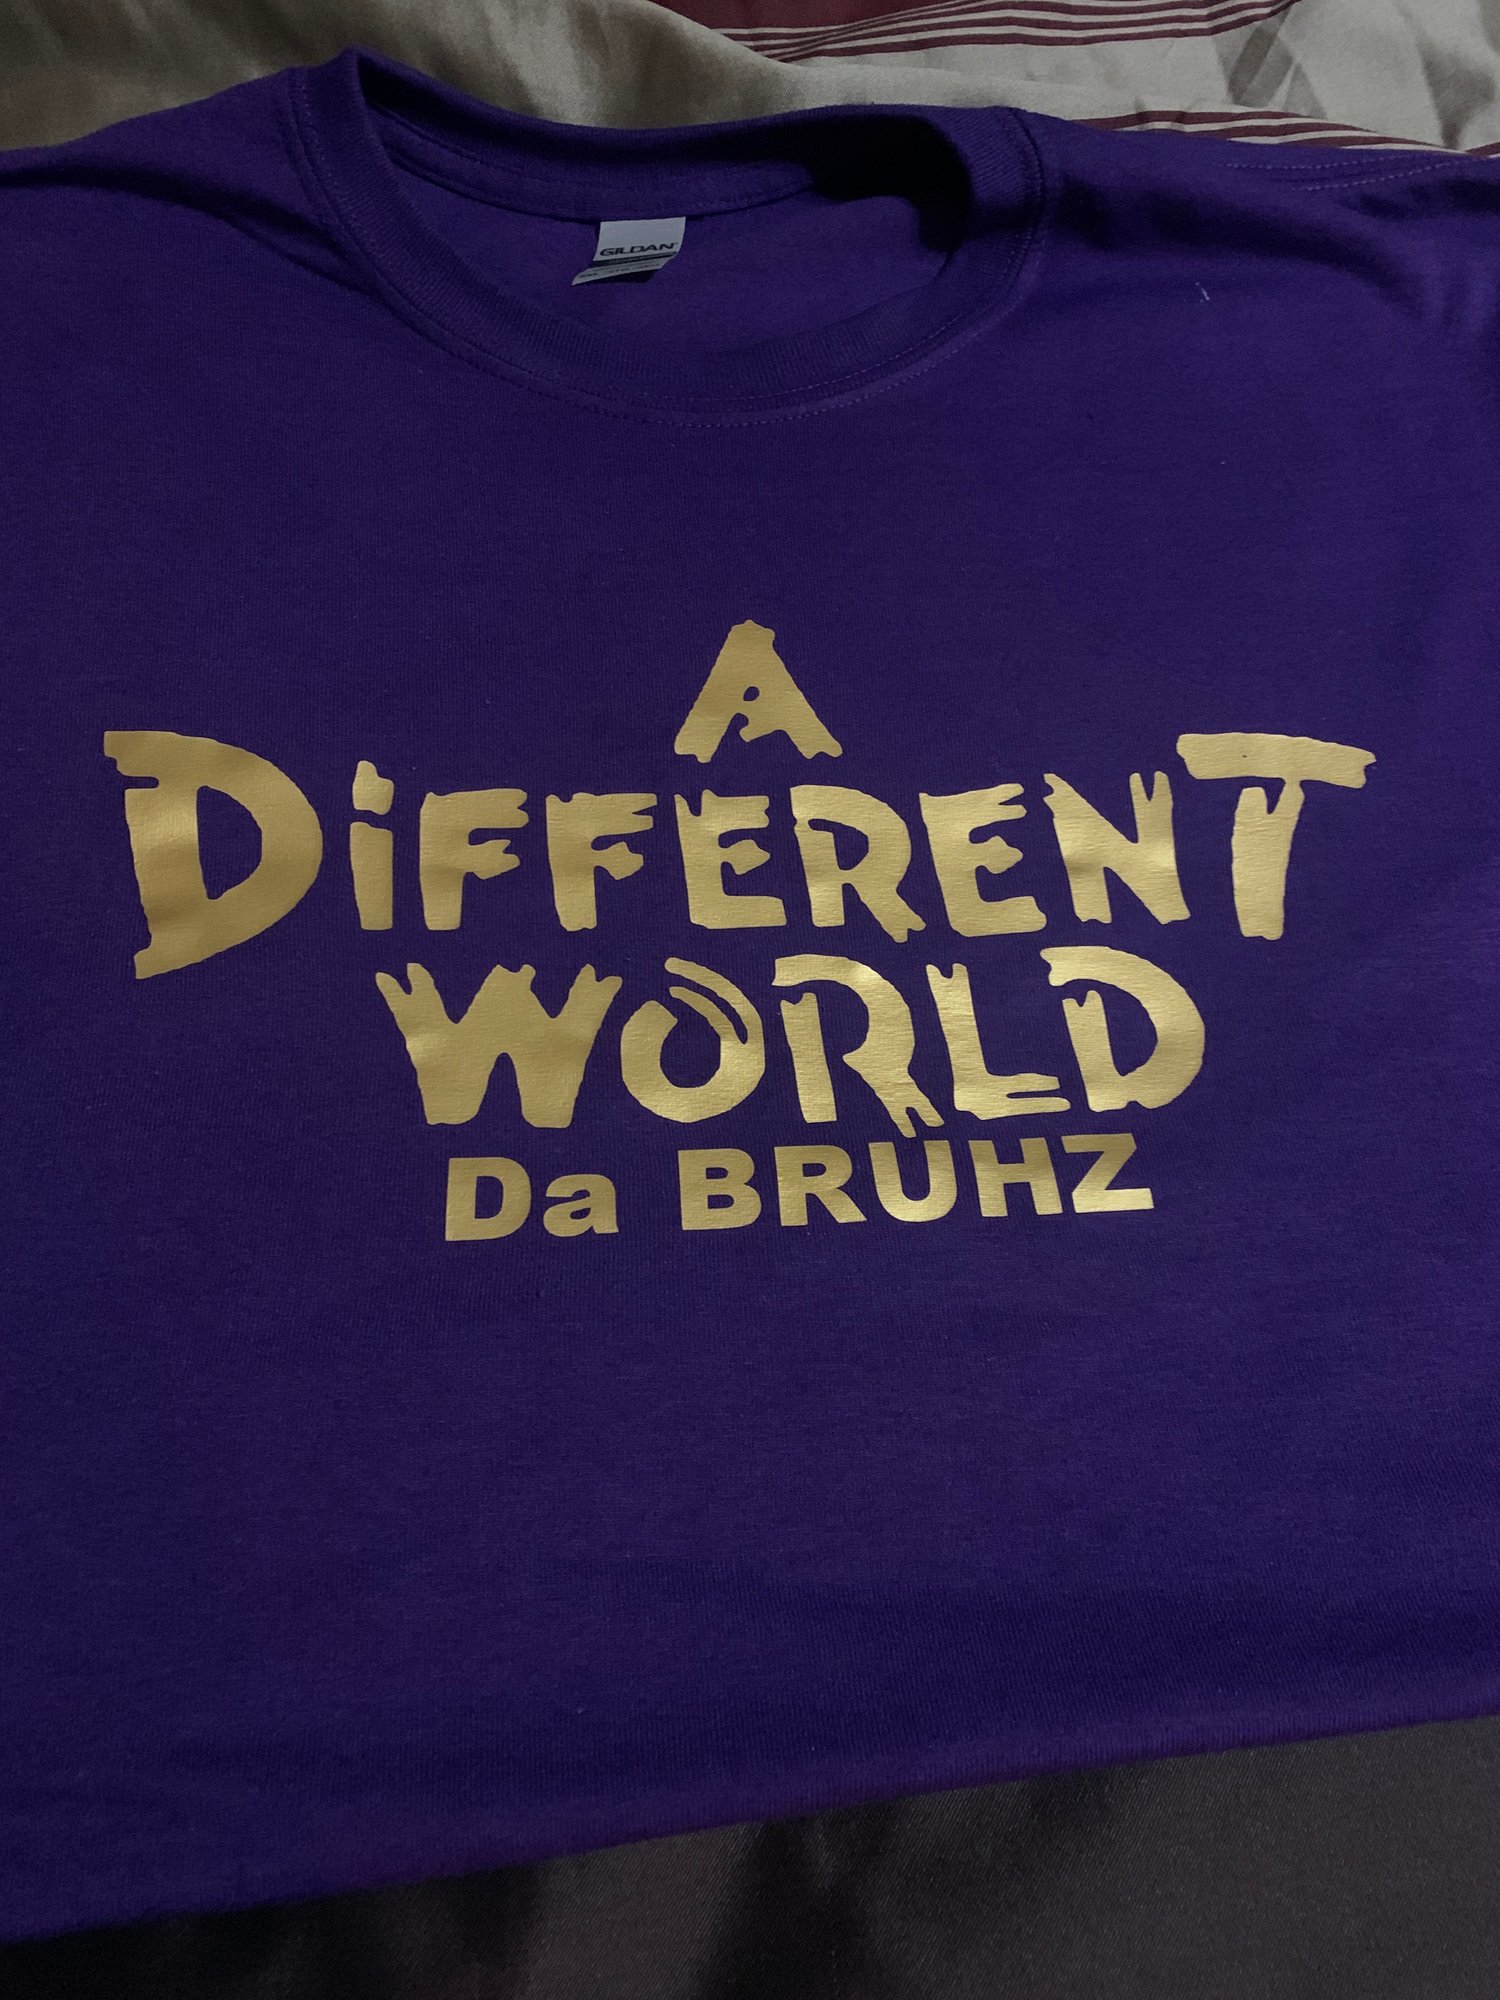 A Different World -Bruhz